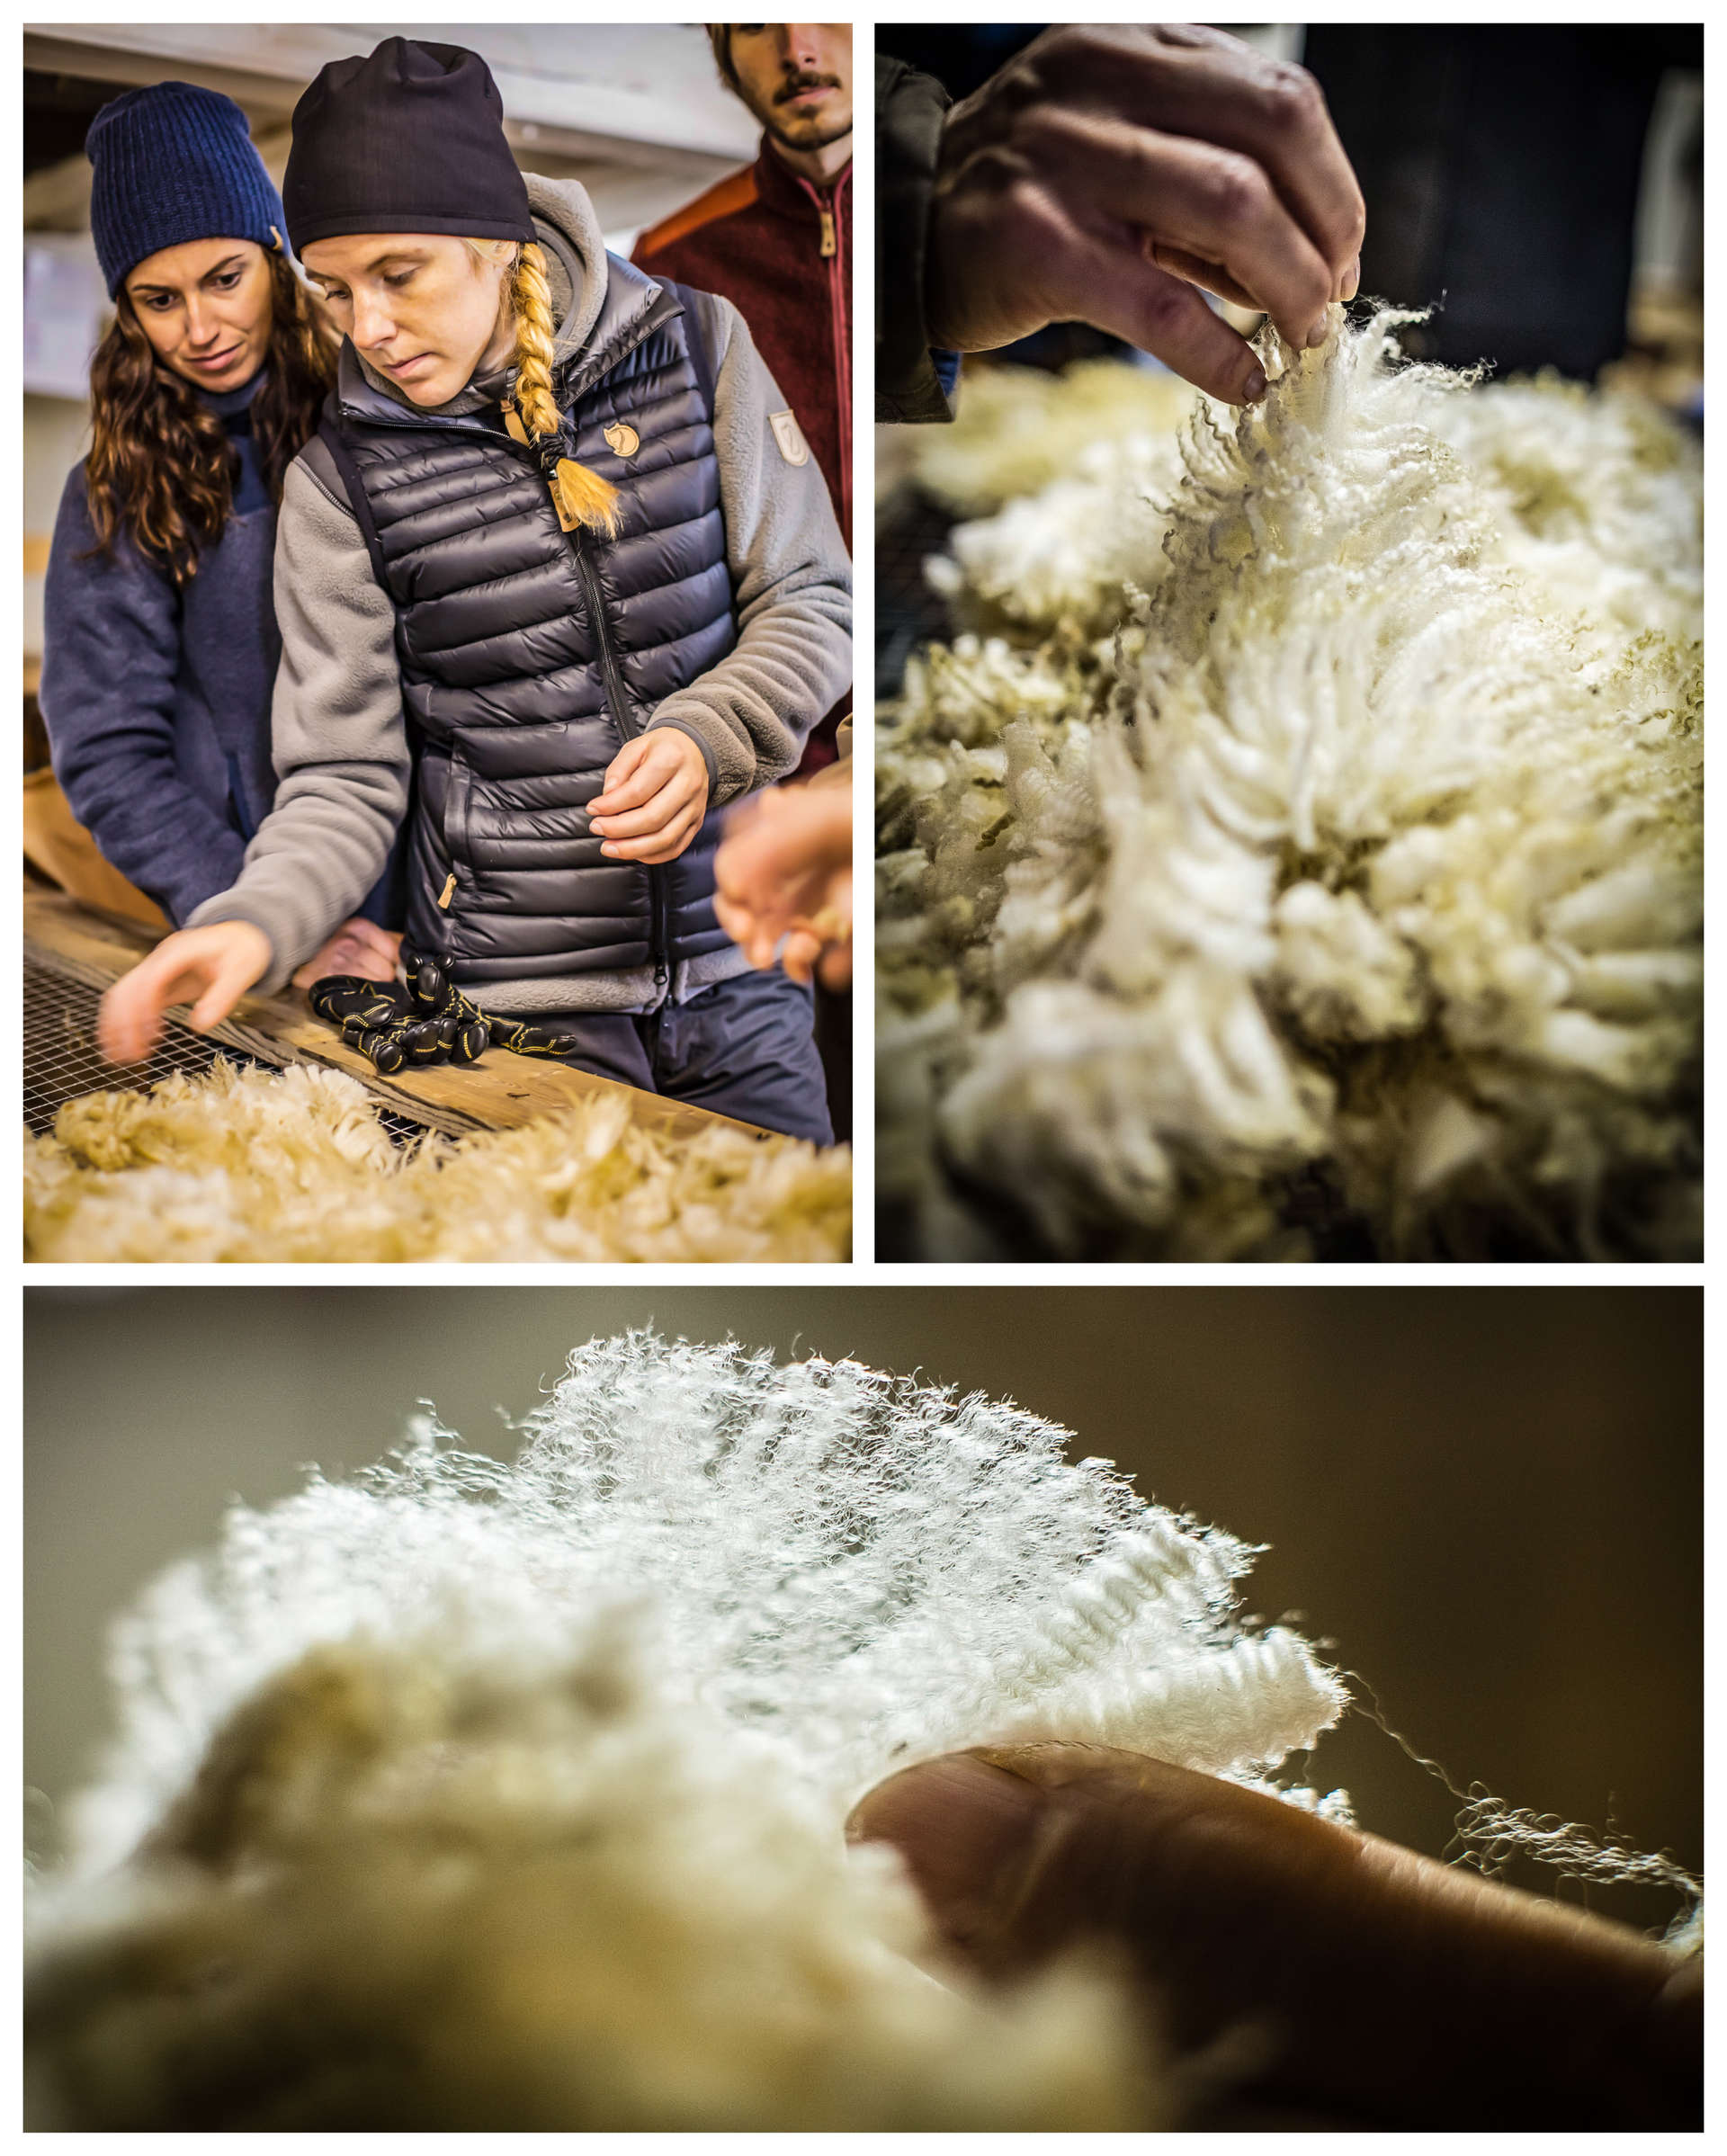 Testing wool att the Brattland Farm